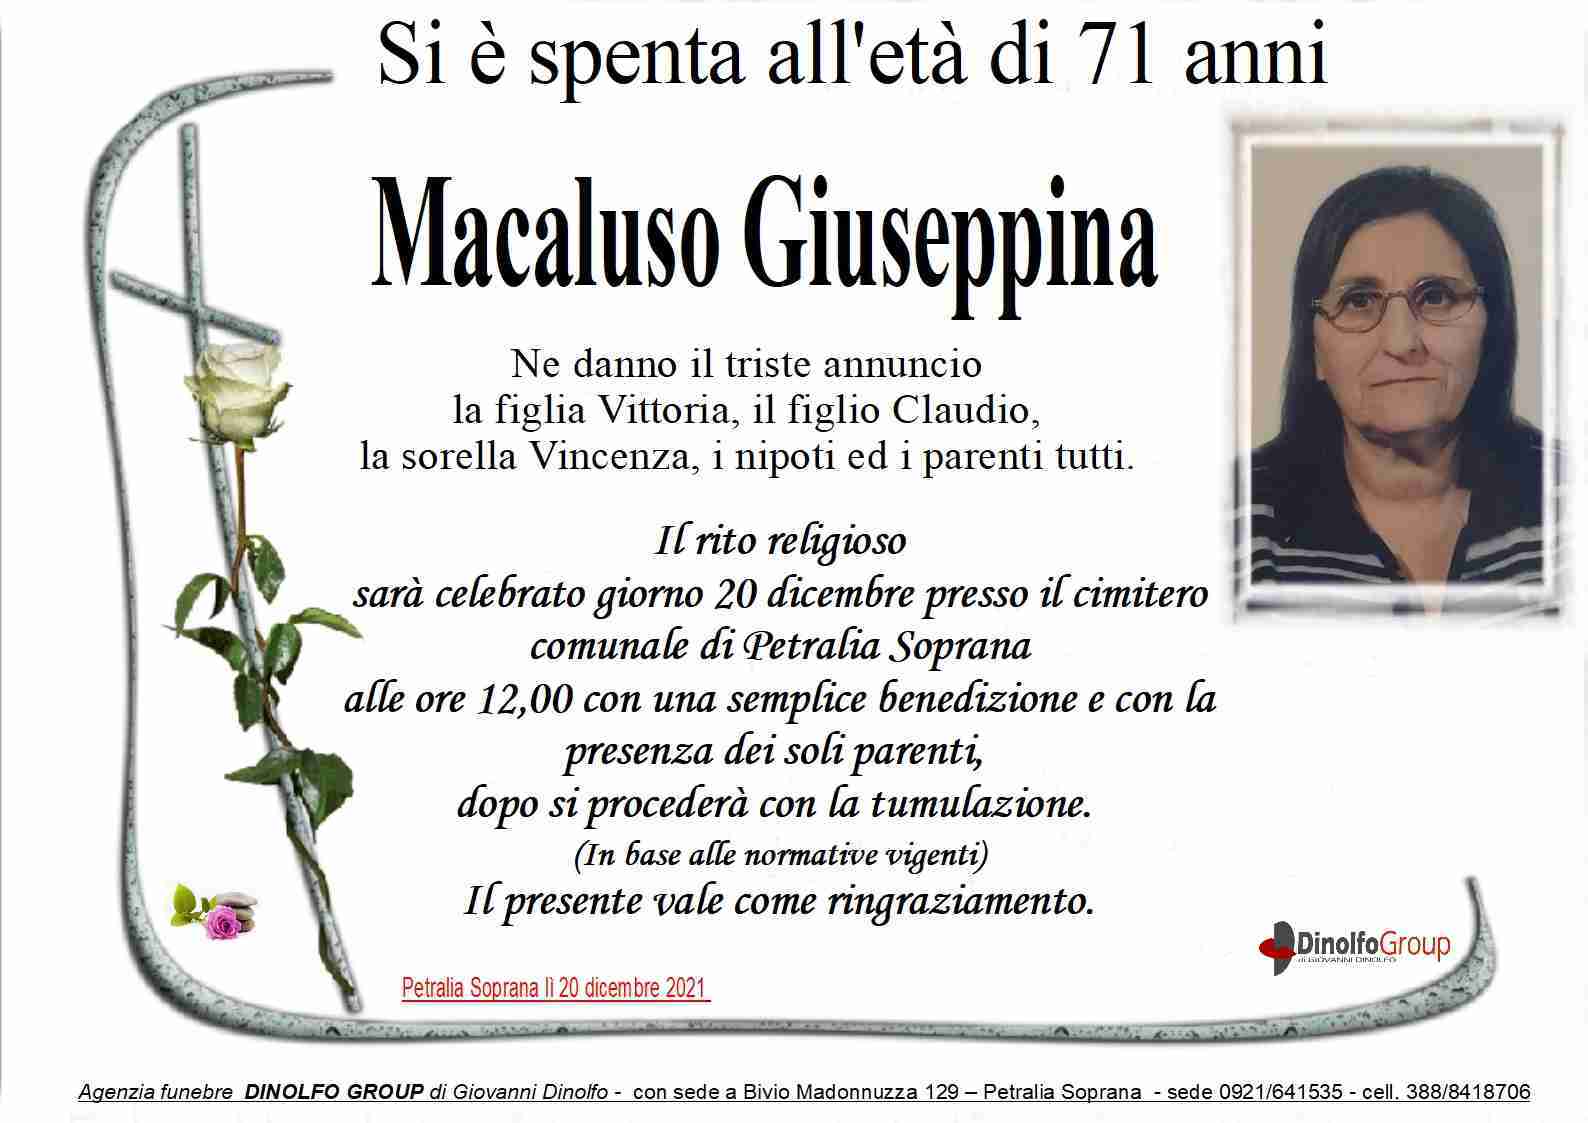 Giuseppina Macaluso